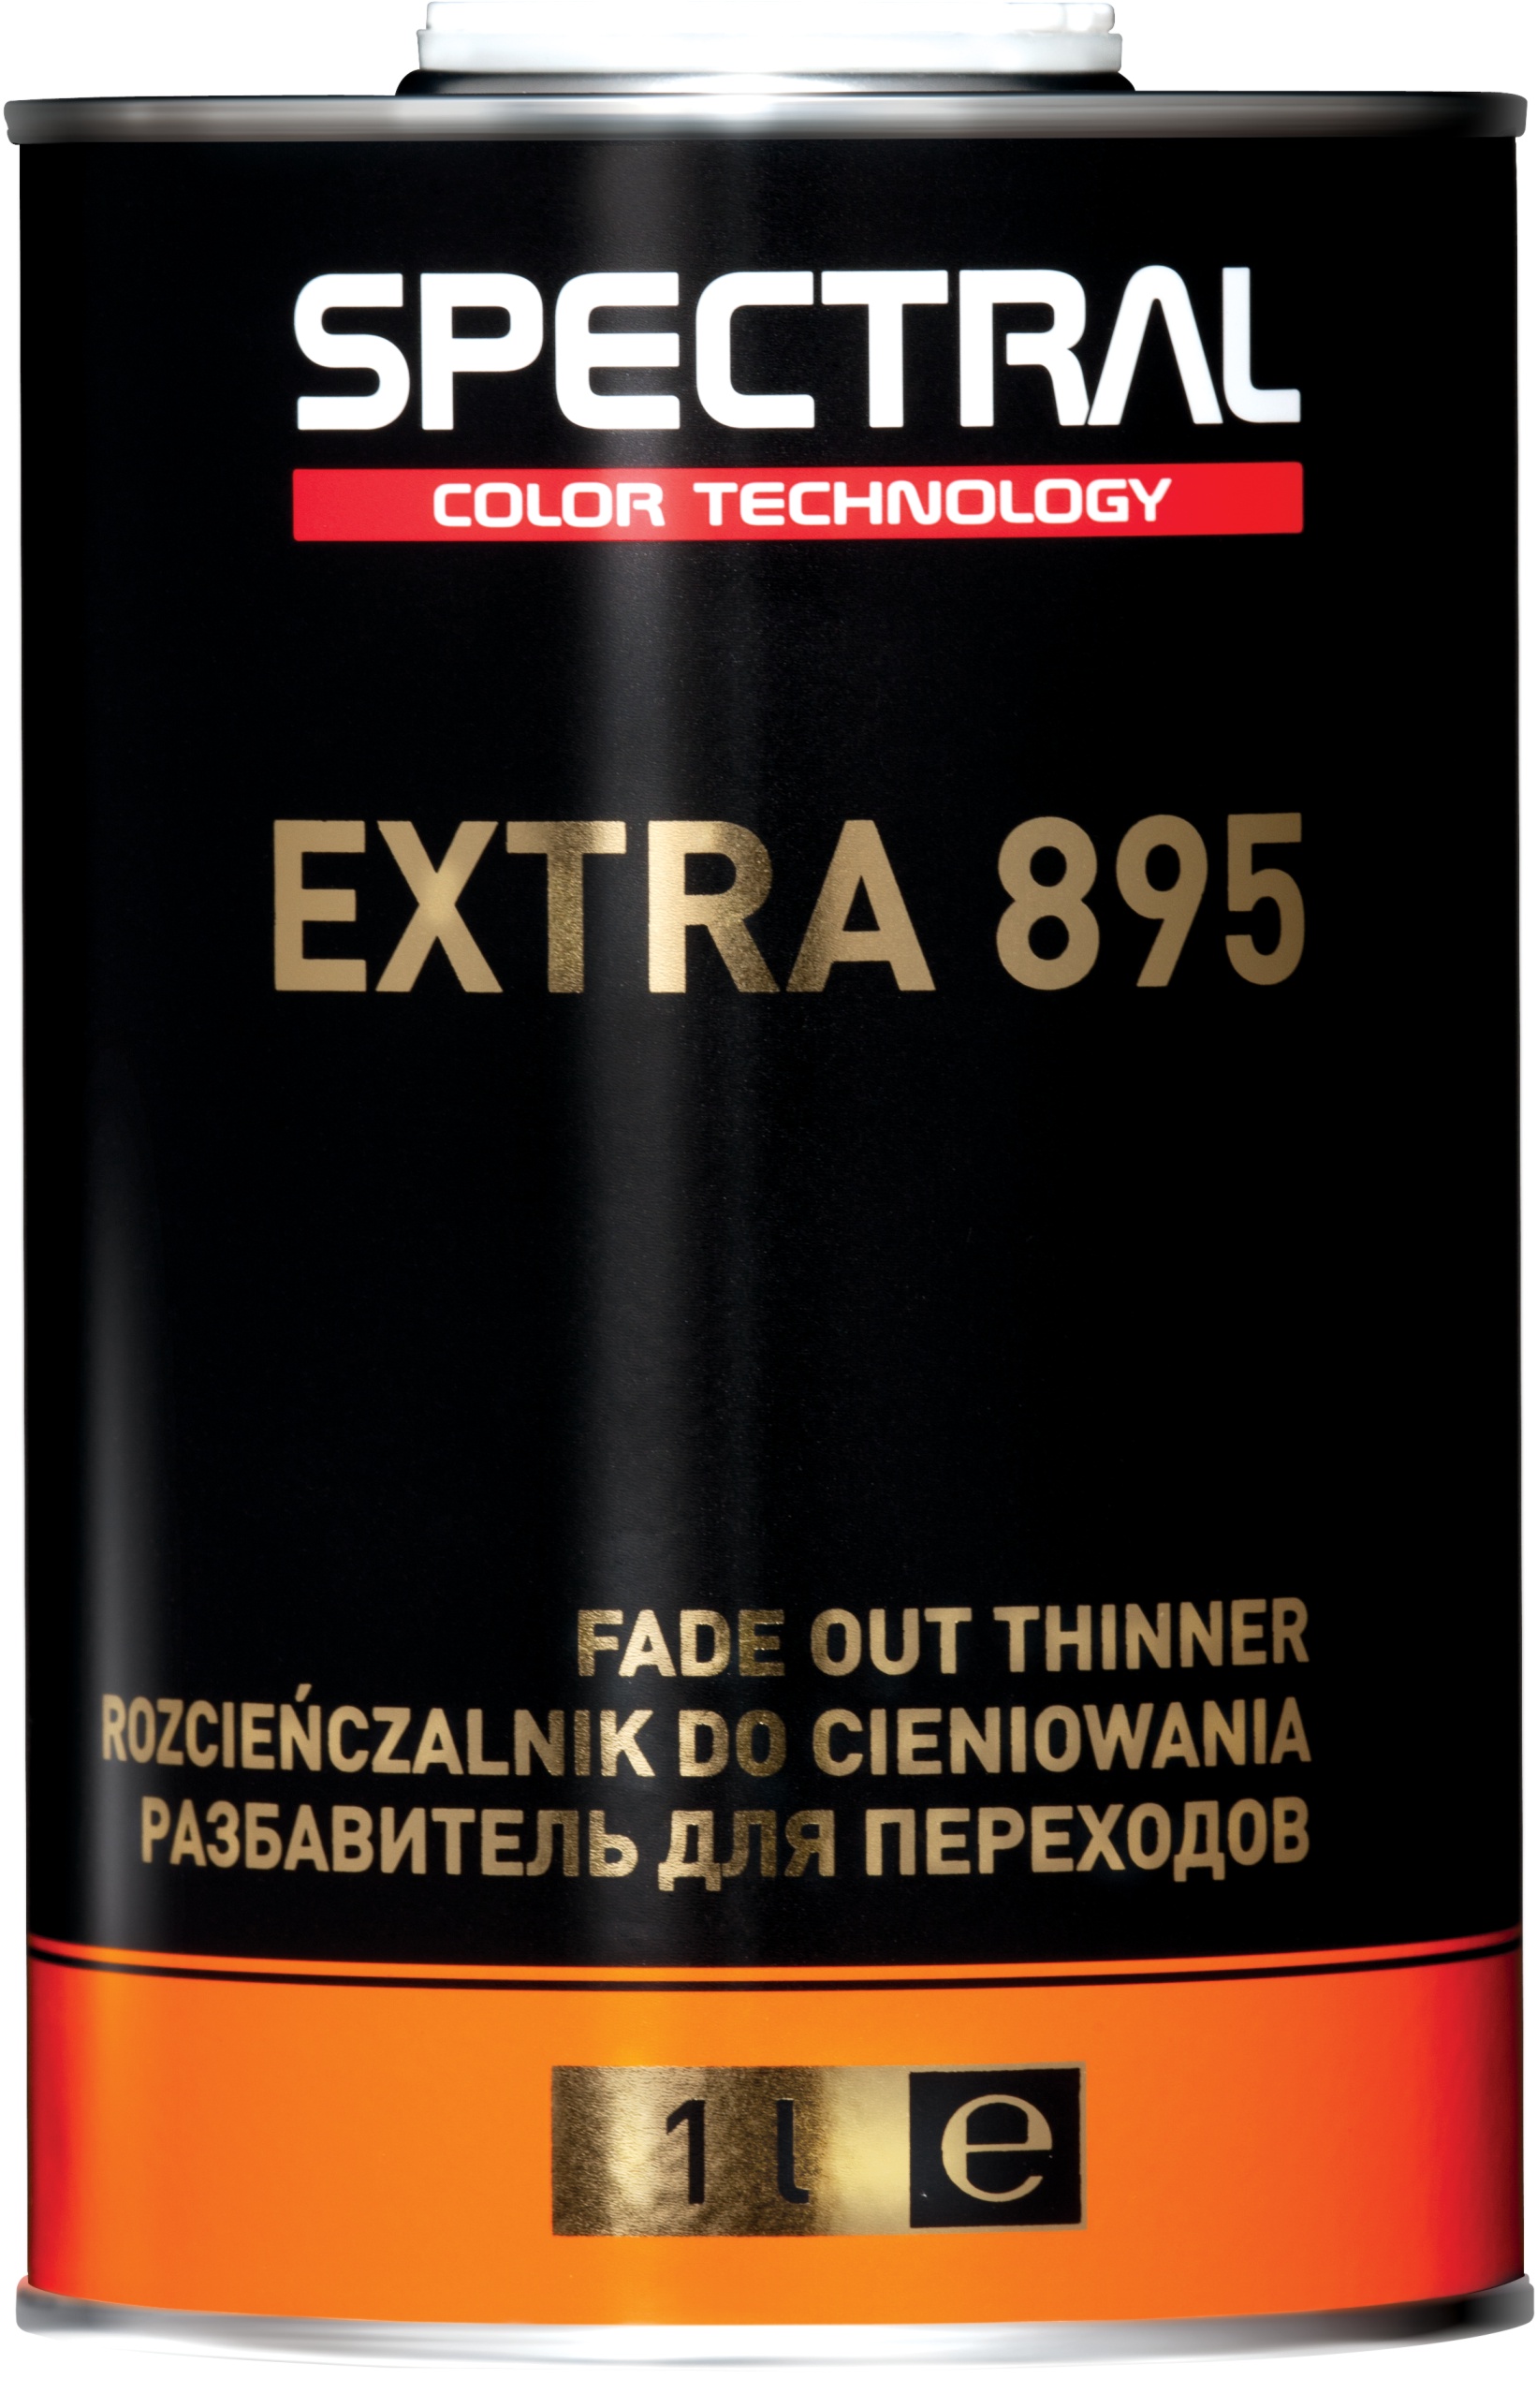 EXTRA 895 - Rozcieńczalnik do cieniowania